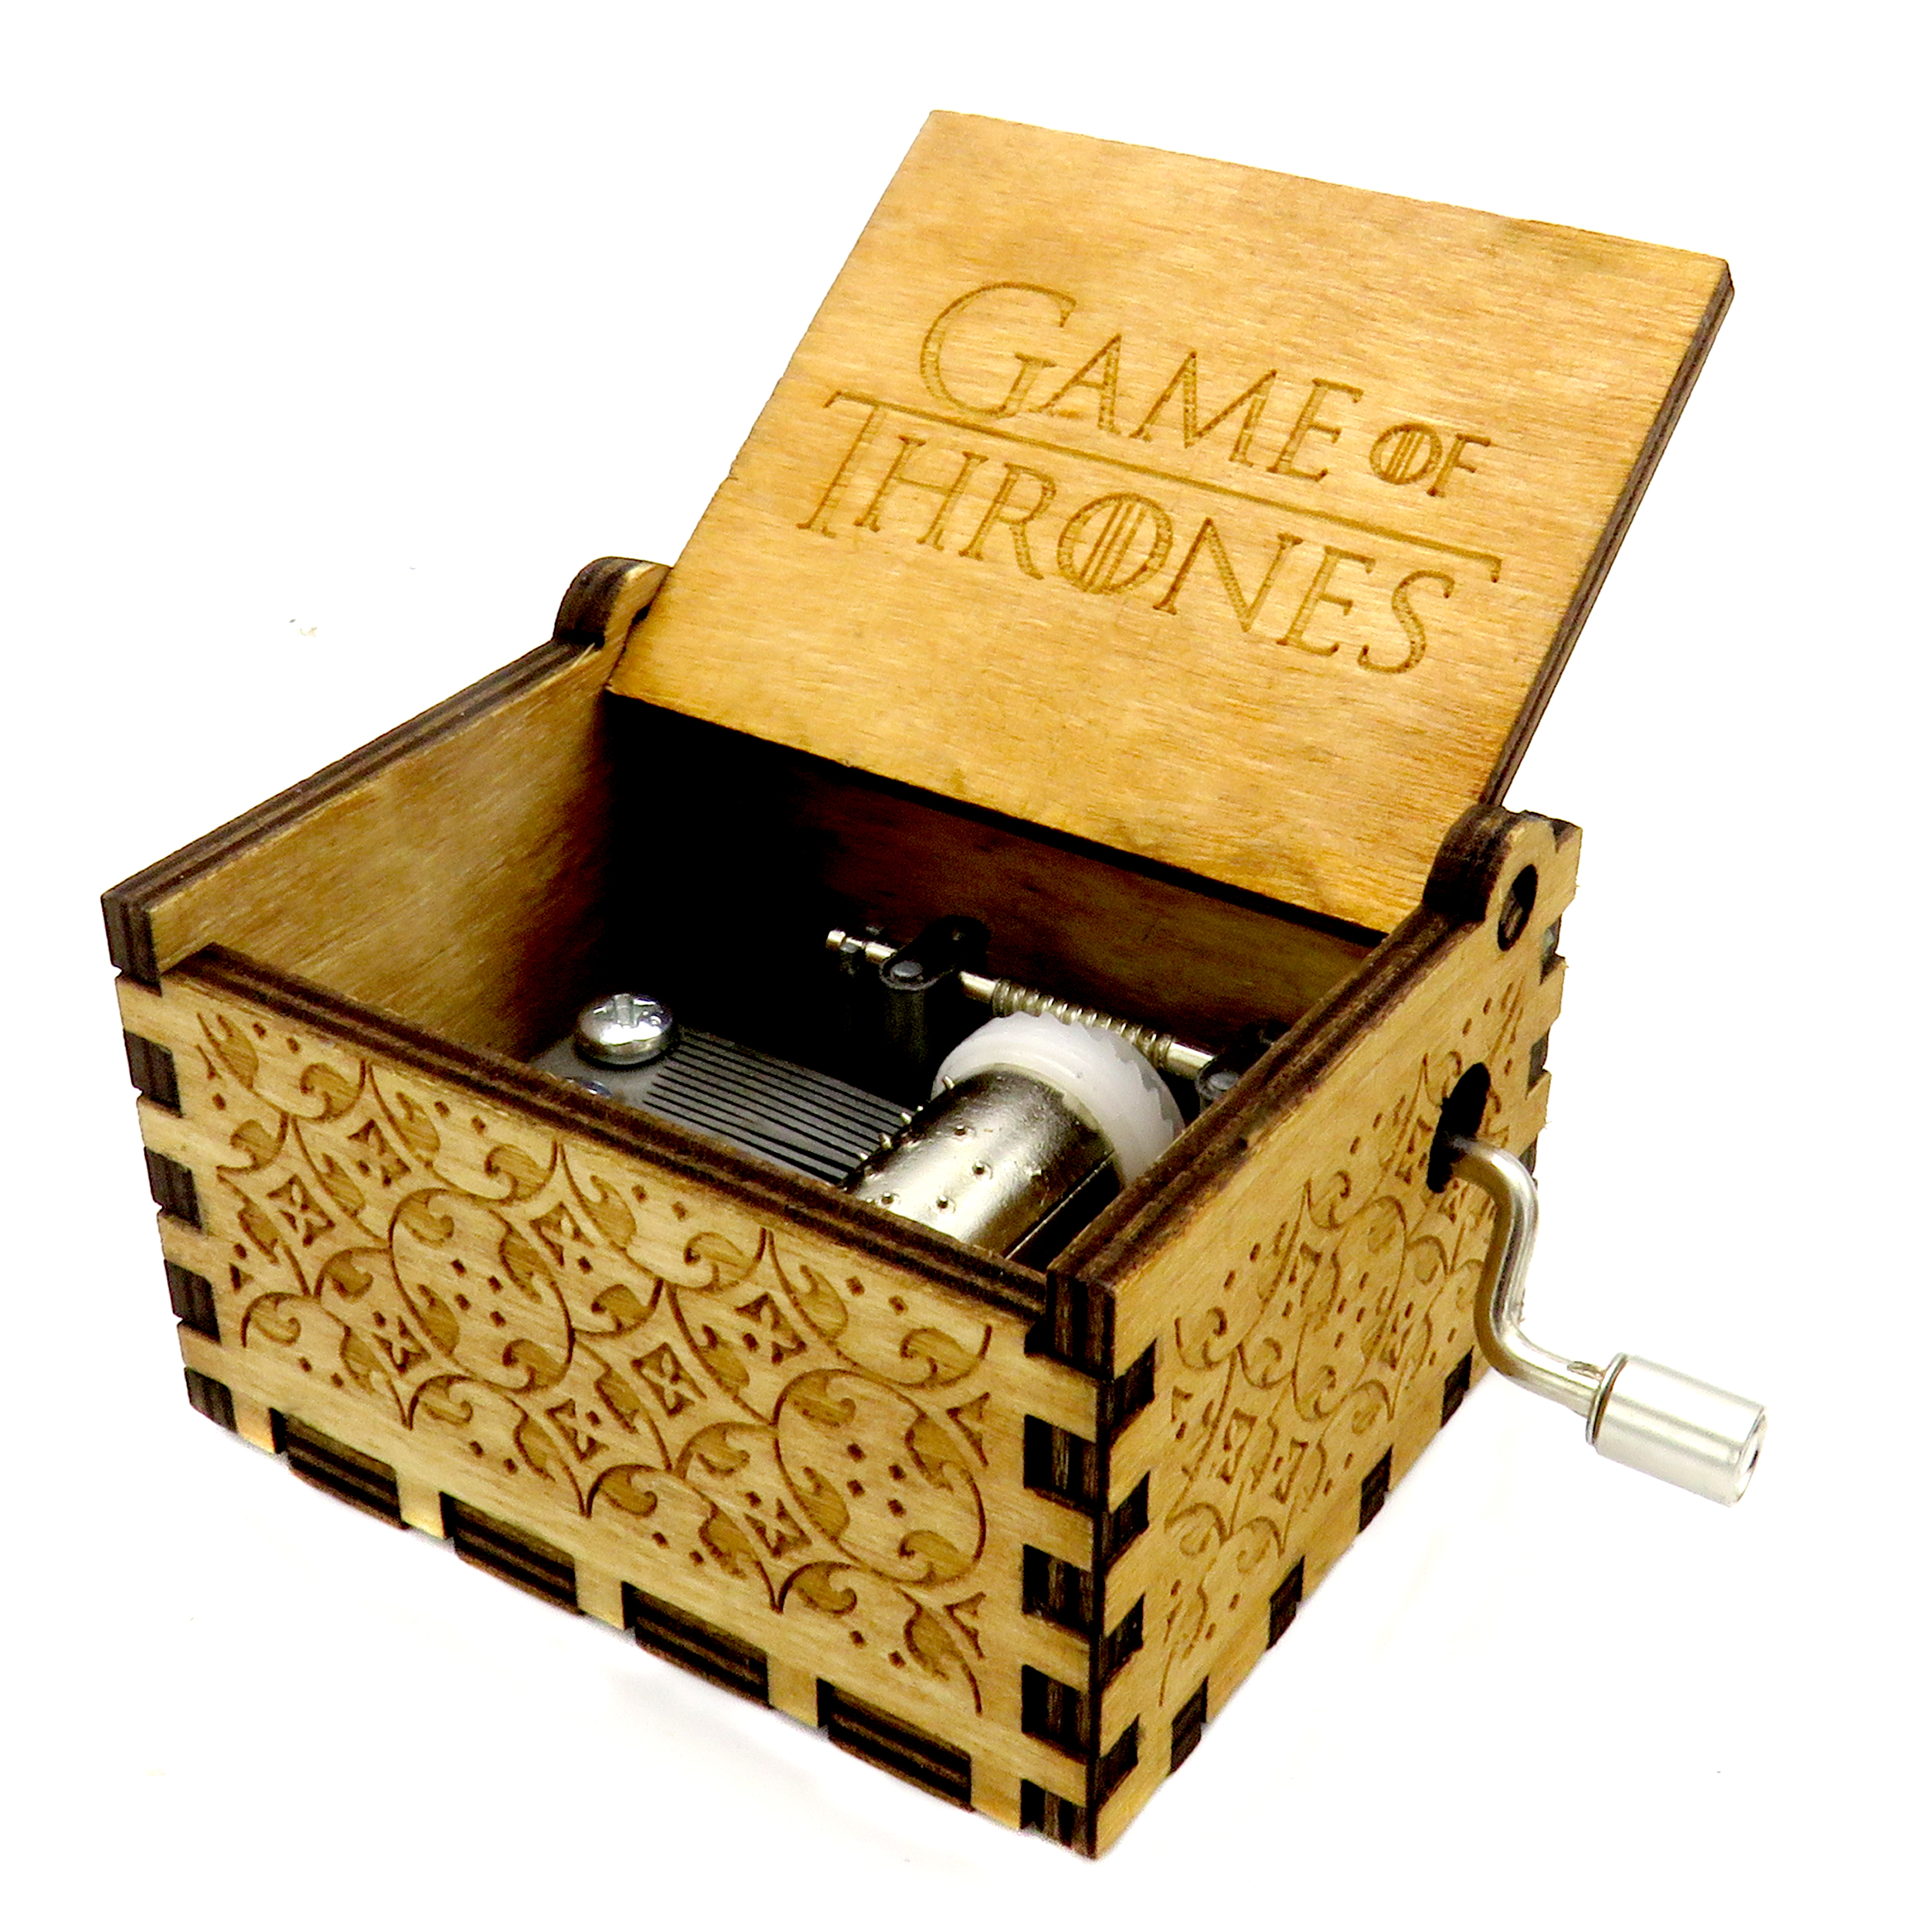  جعبه موزیکال مدل Game Of Thrones